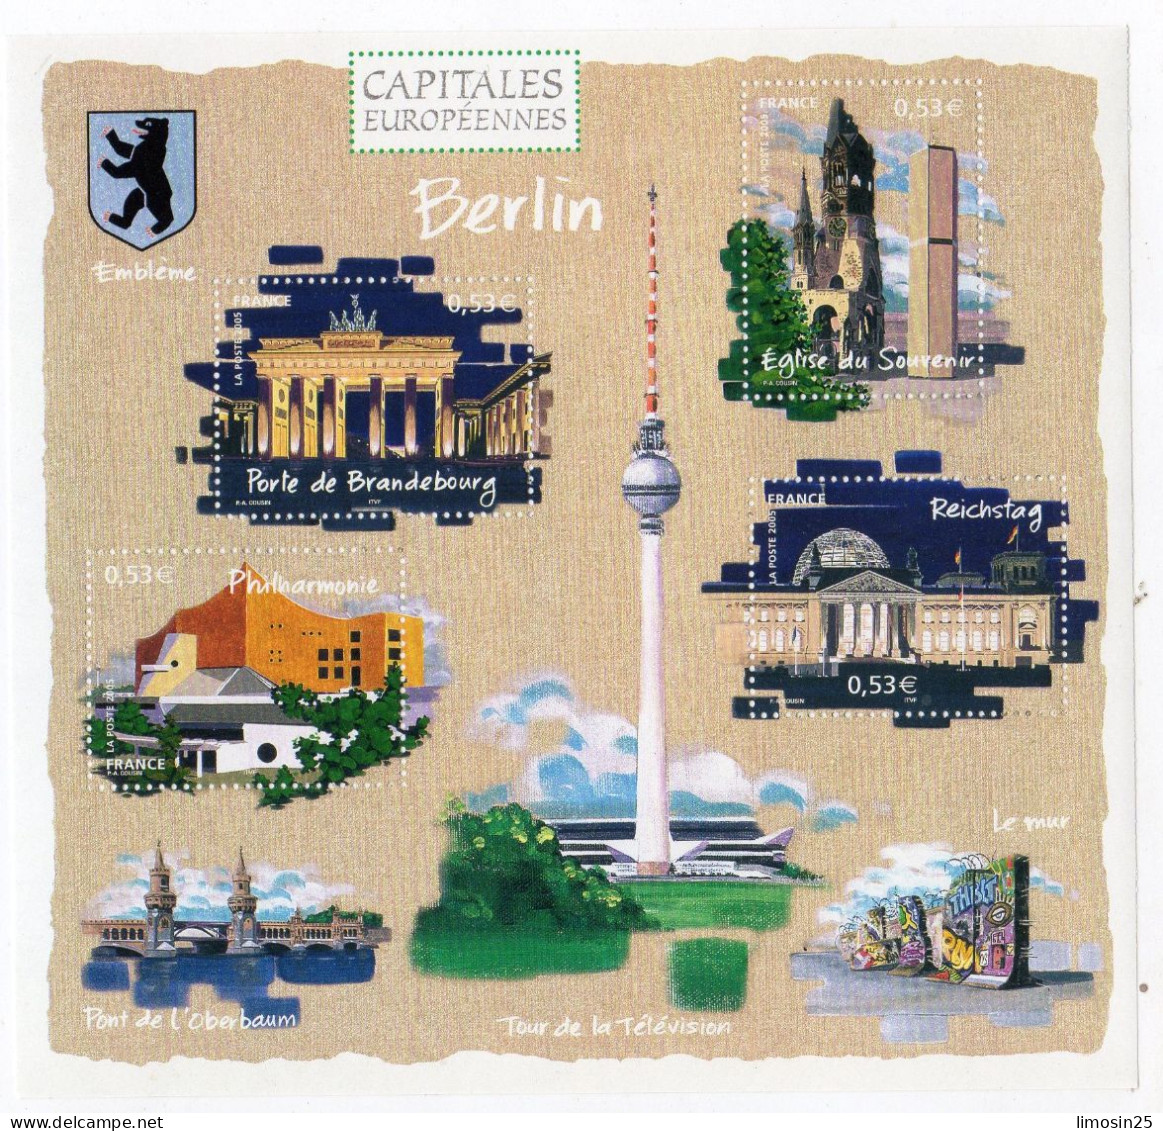 CAPITALES EUROPEENNES - Berlin - 2005 - Ongebruikt